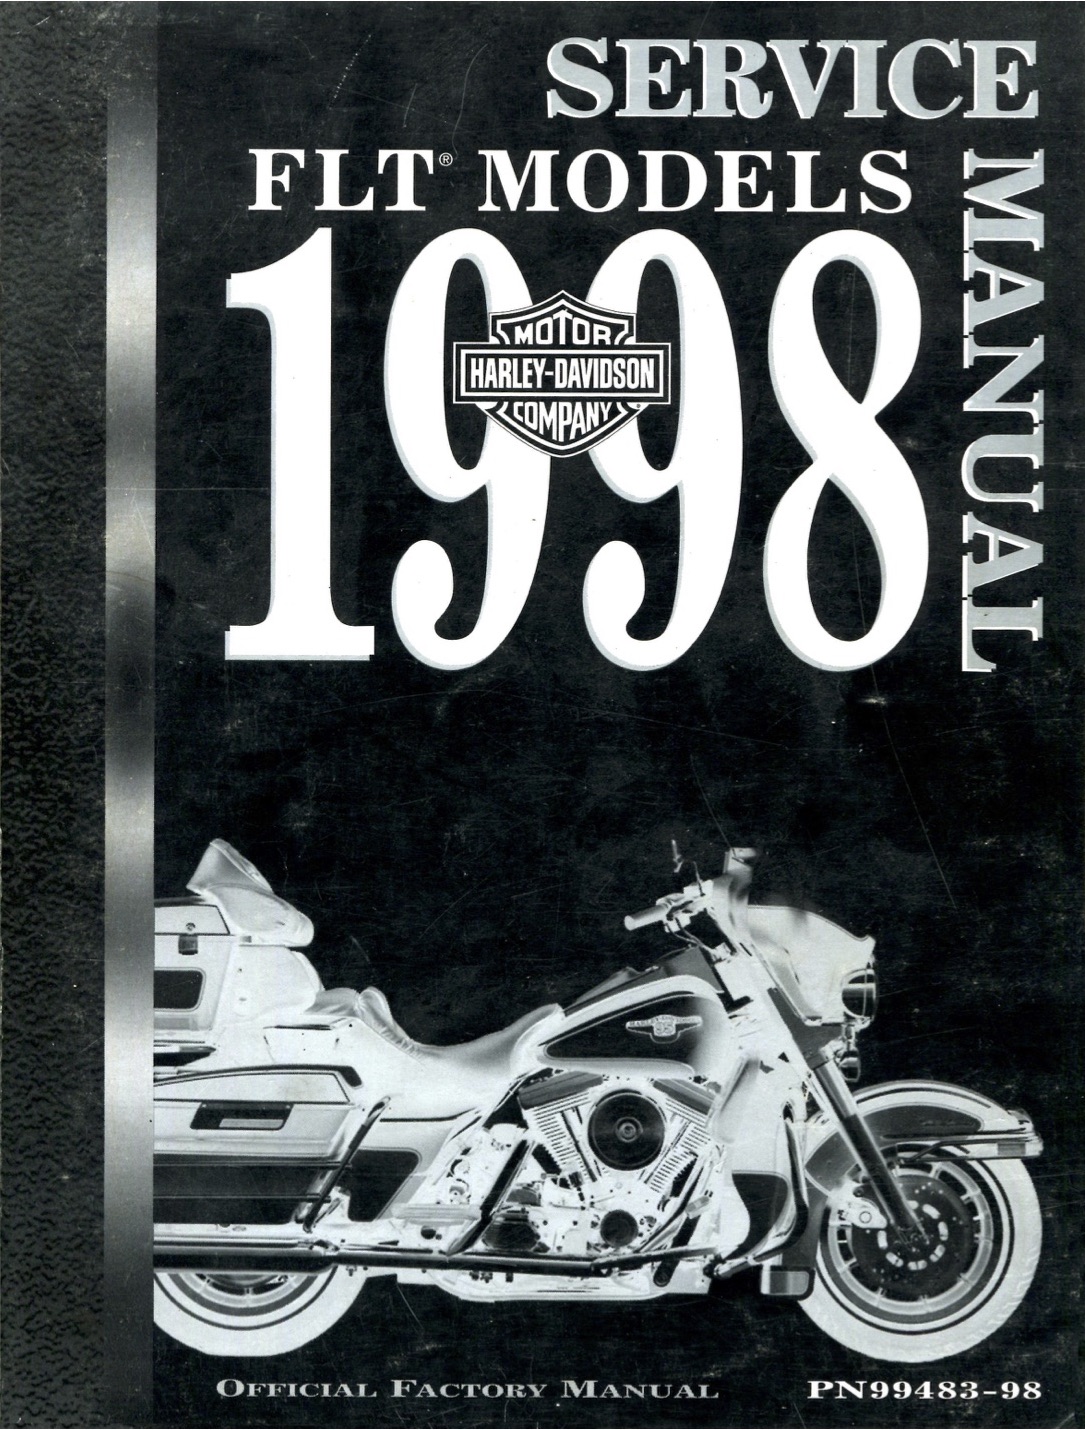 1998 FLT Models Parts Catalog